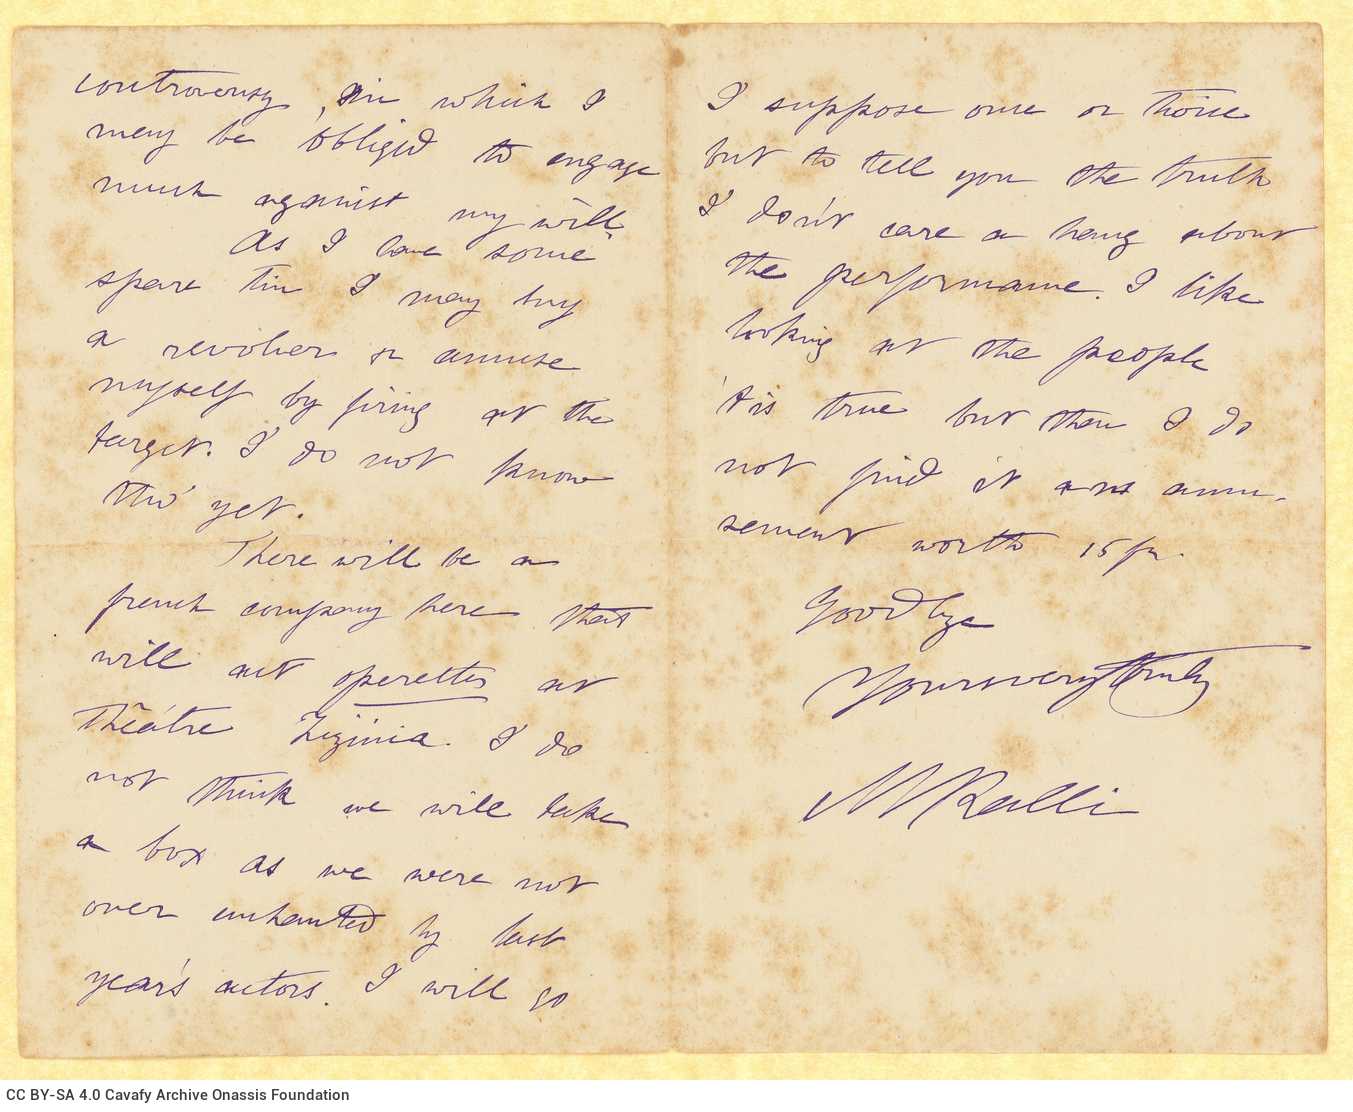 Χειρόγραφη επιστολή του Μικέ Ράλλη προς τον Καβάφη, γραμμένη σε δύο �